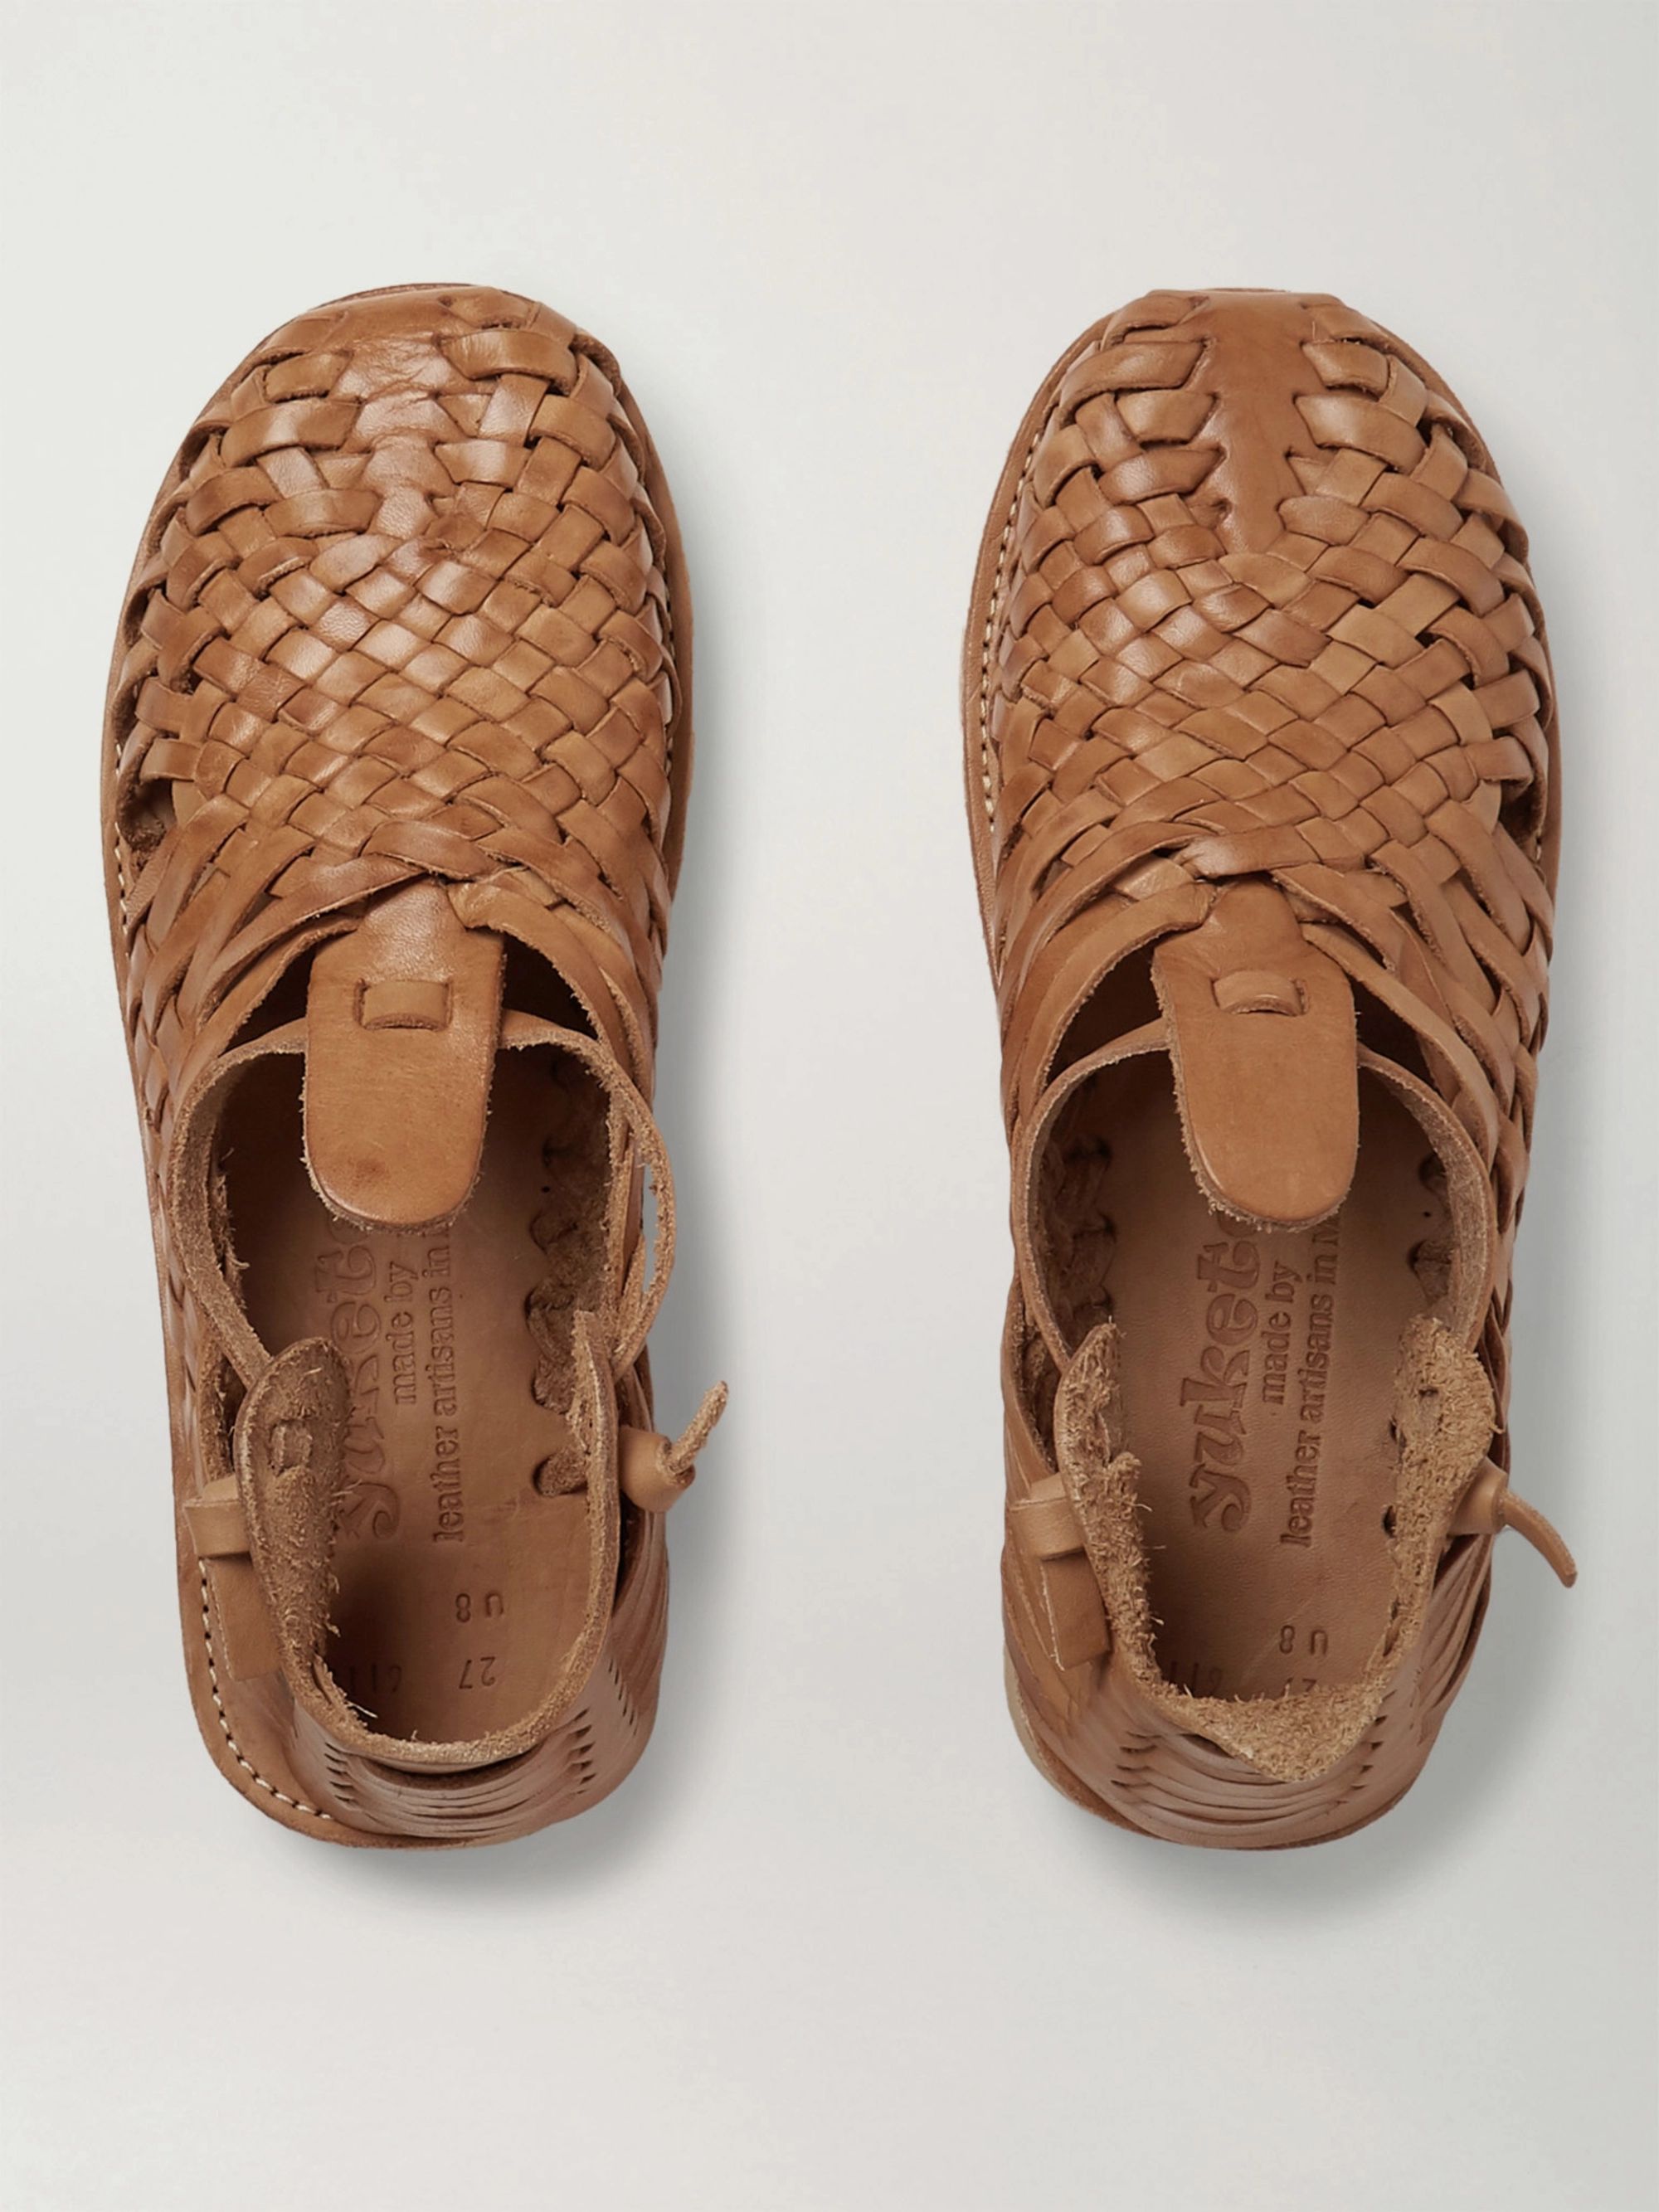 huarache woven sandals